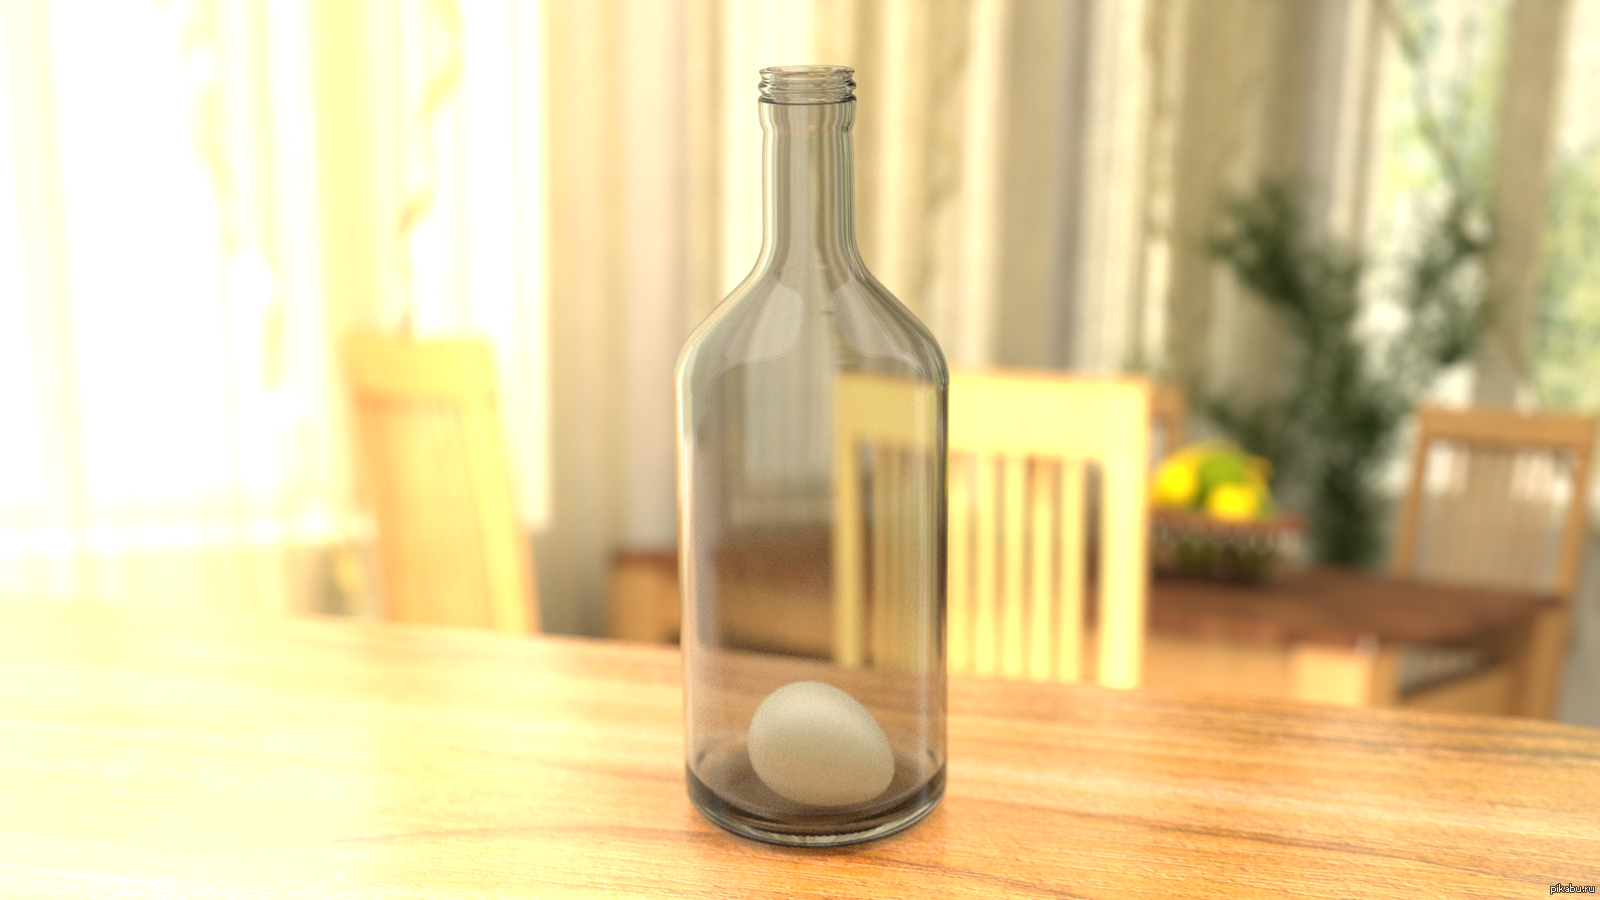 Яйцо в бутылке. Опыт яйцо в бутылке. Эксперимент с яйцом и бутылкой. Бутылка с узким горлышком. Бутылочка опыта